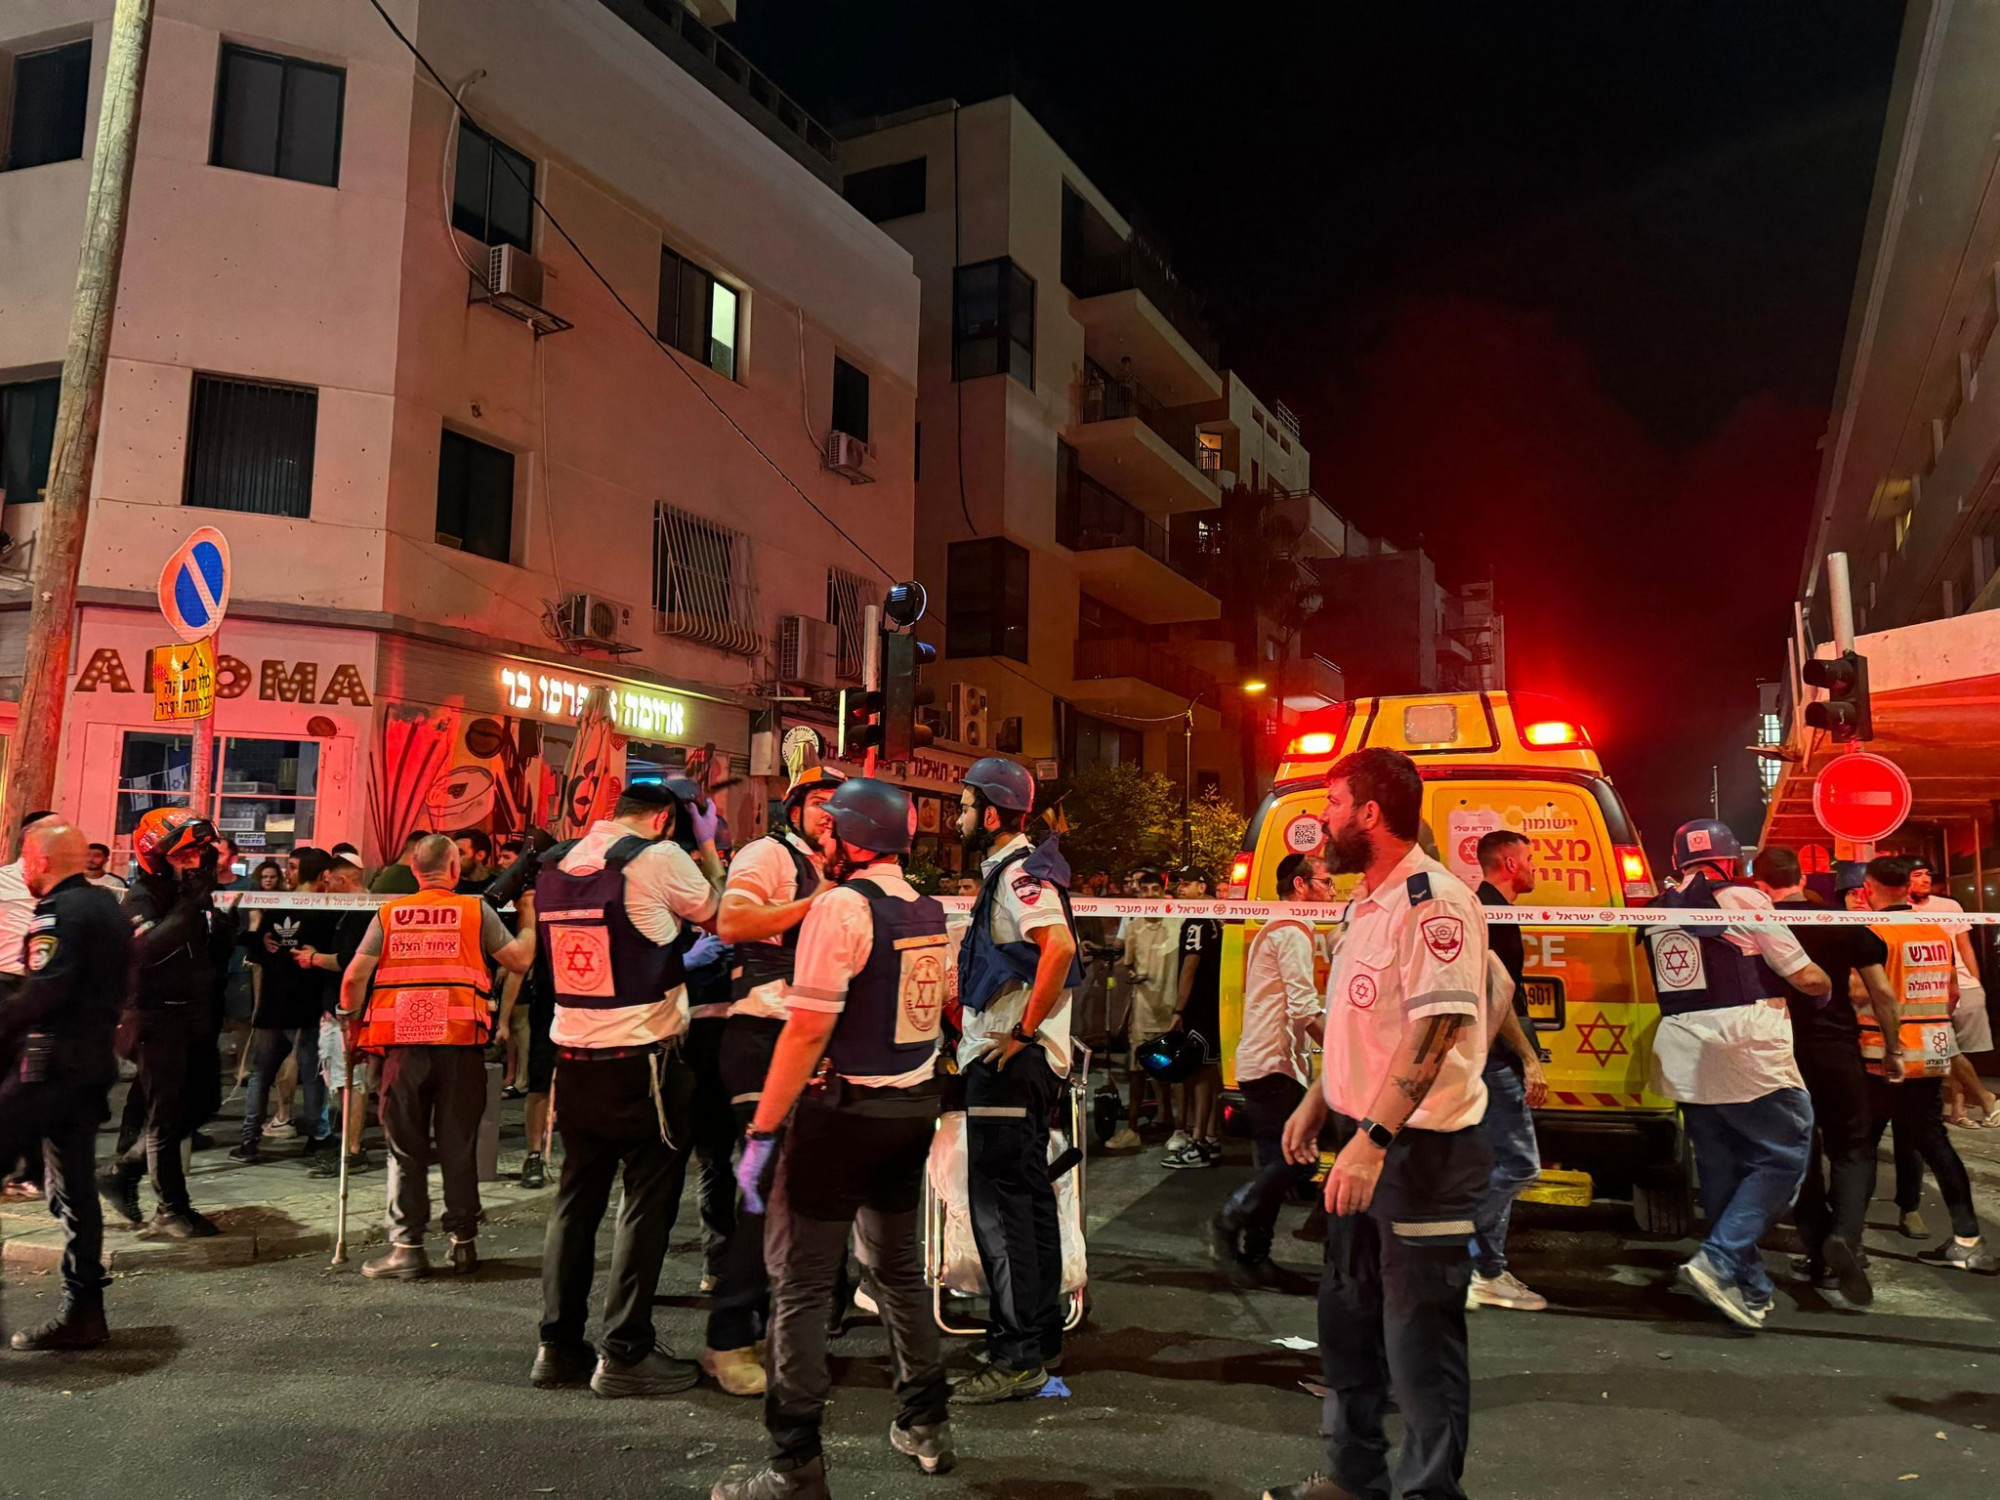 Emberi hiba miatt nem szedték le a Tel-Aviv belvárosába csapódó drónt, ami megölt egy embert